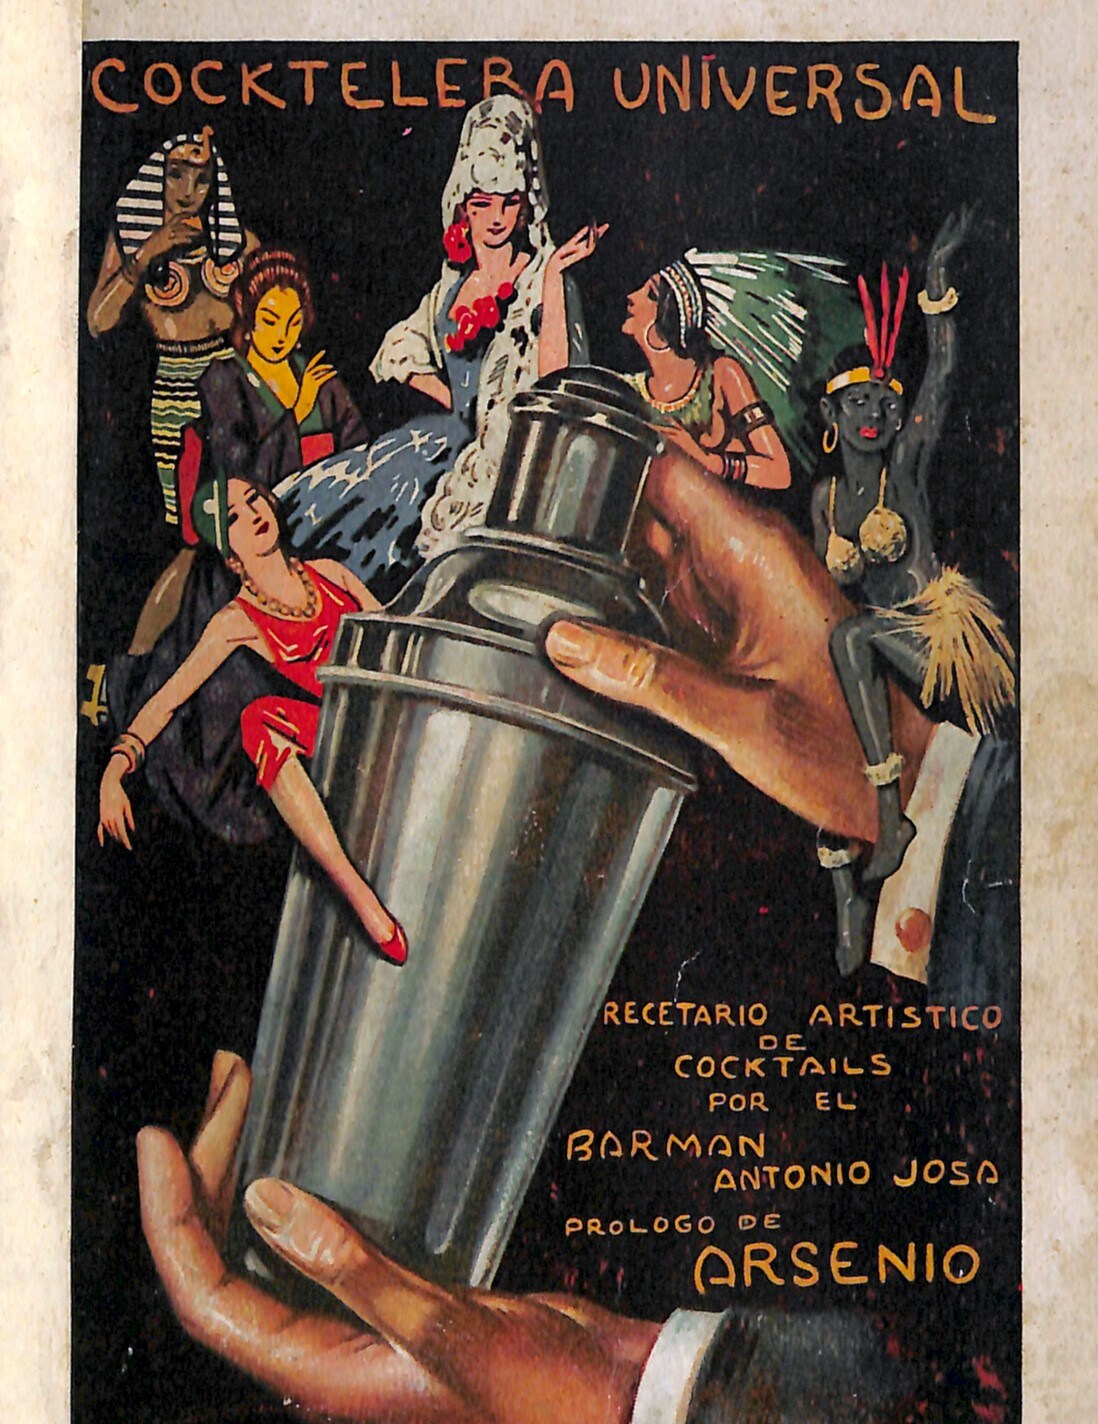 En 1933 se publicó uno de los libros sobre coctelería más curiosos de España. Algo picantón, estaba dedicado a cupletistas y famosas artistas de variedades